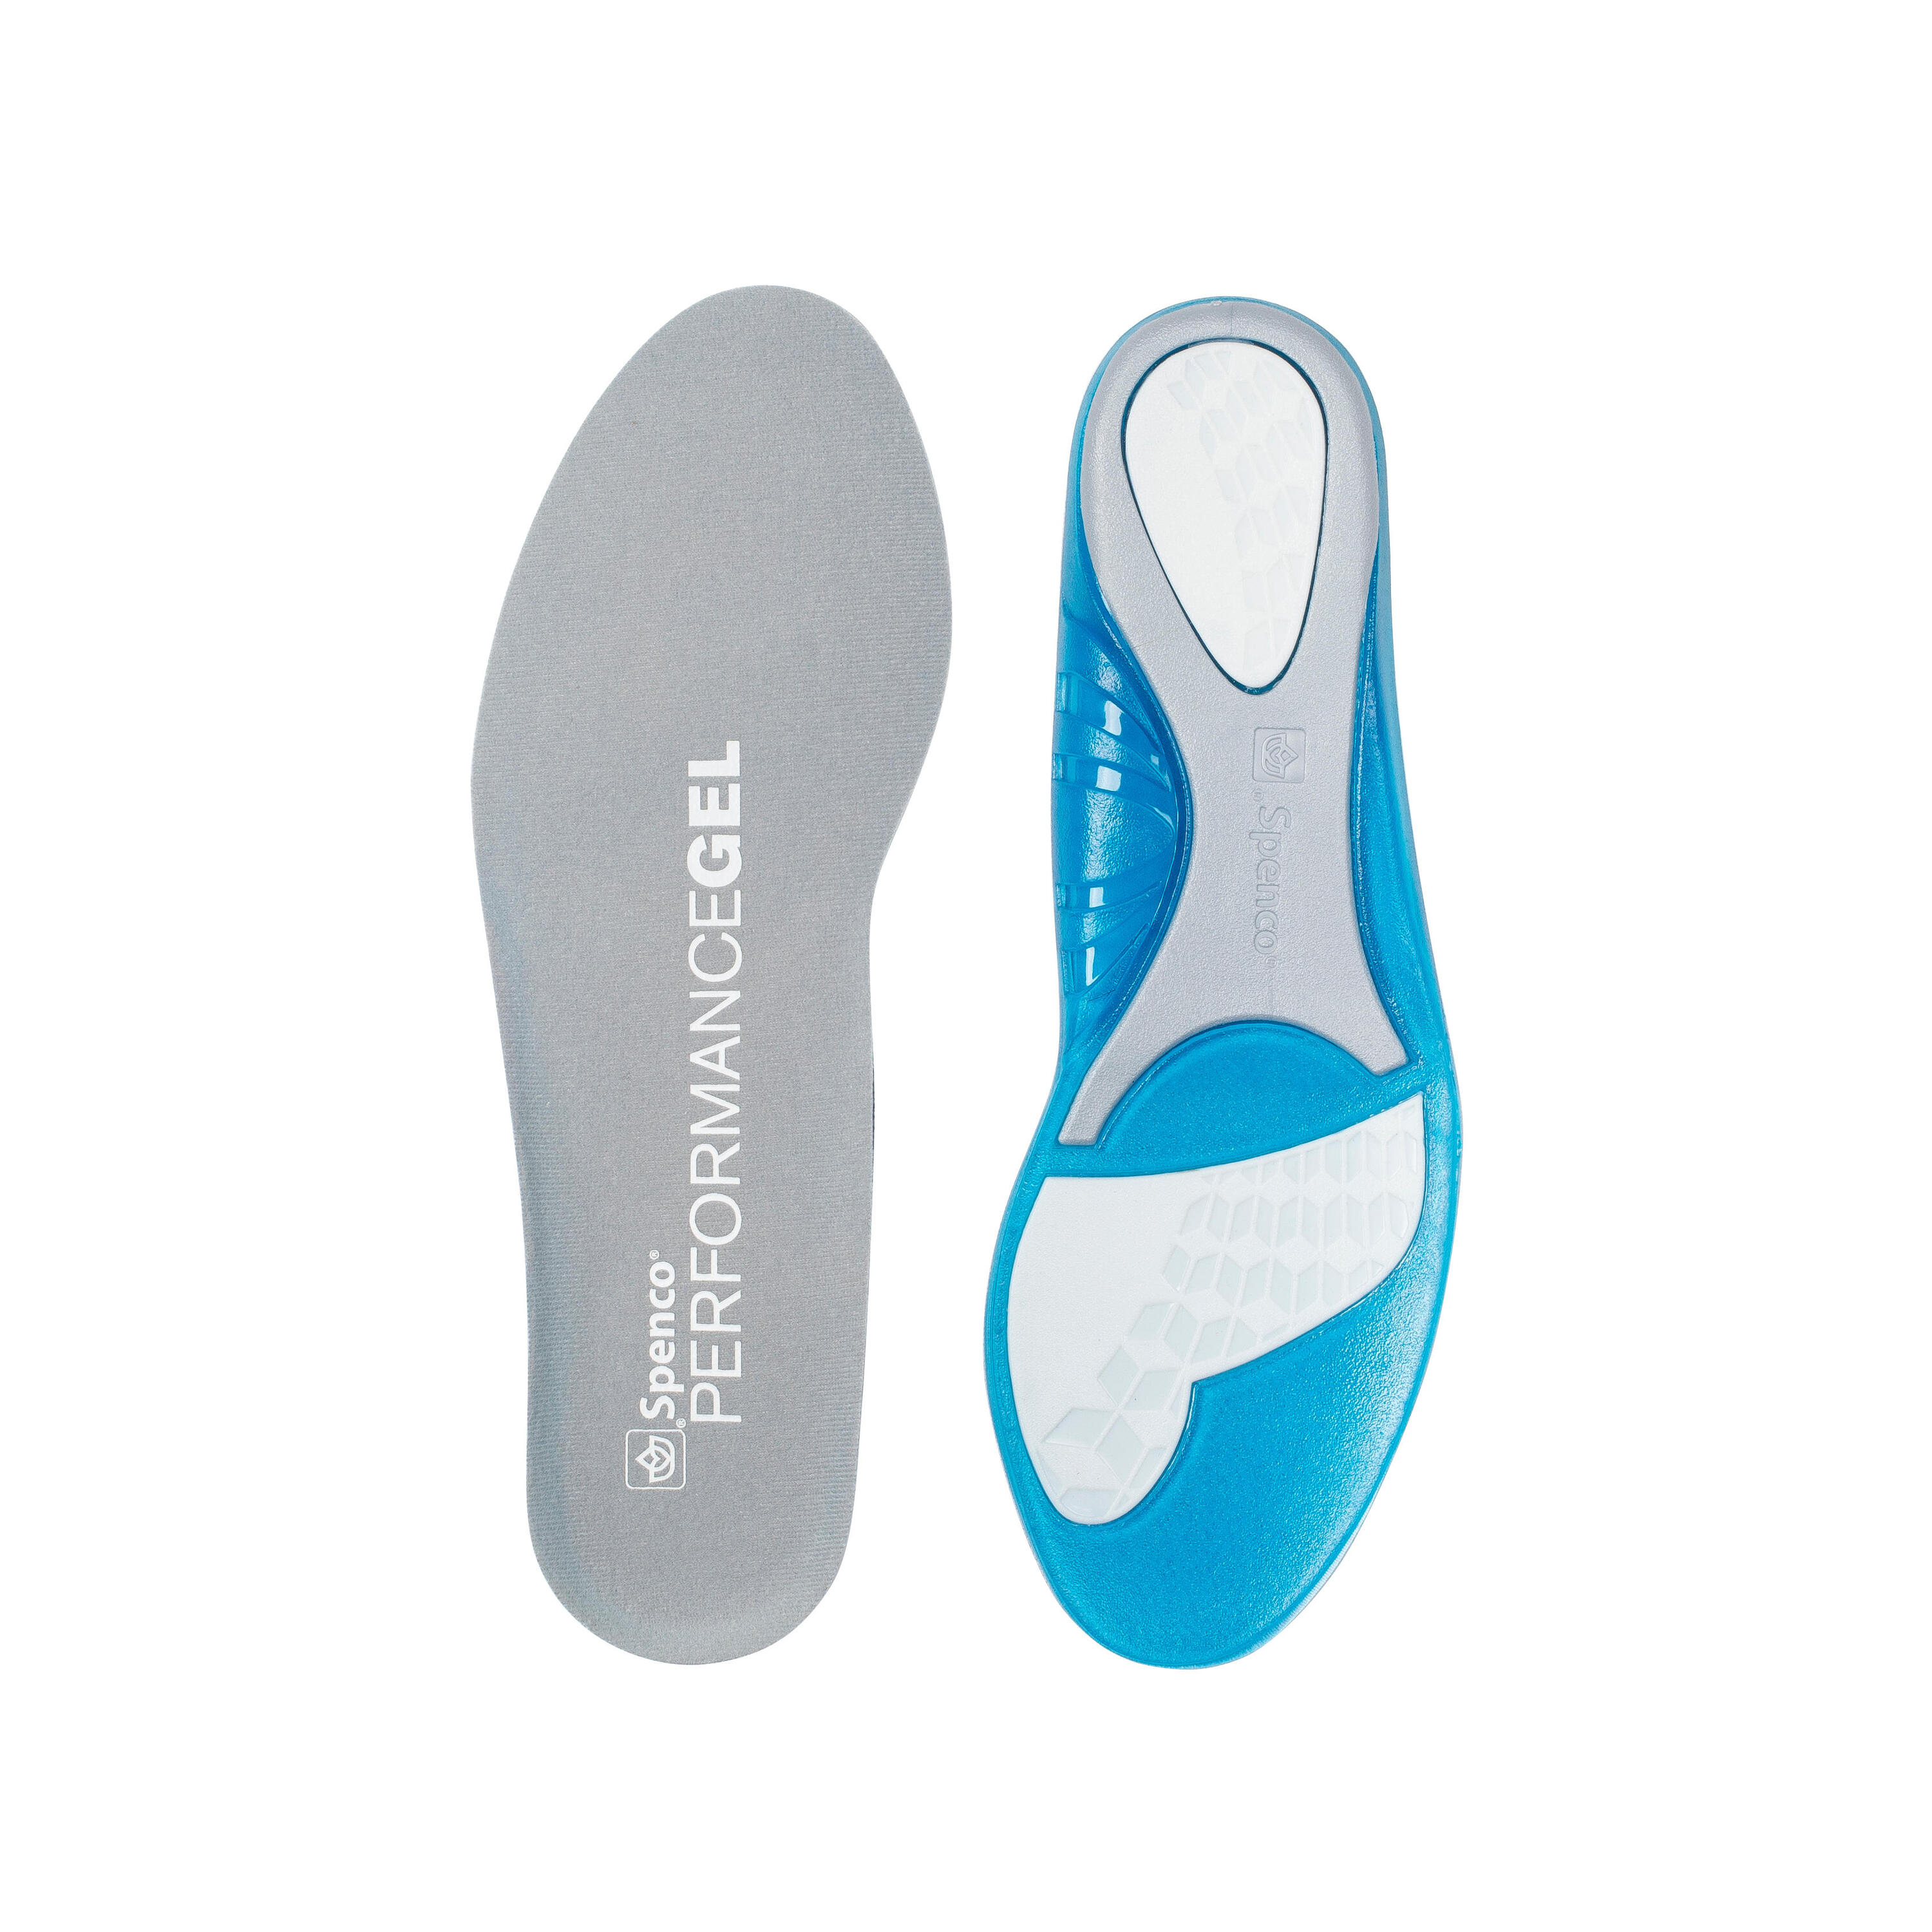 Стельки Ironman Spenco Gel Perfomance стельки массажные solers massaging gel голубой